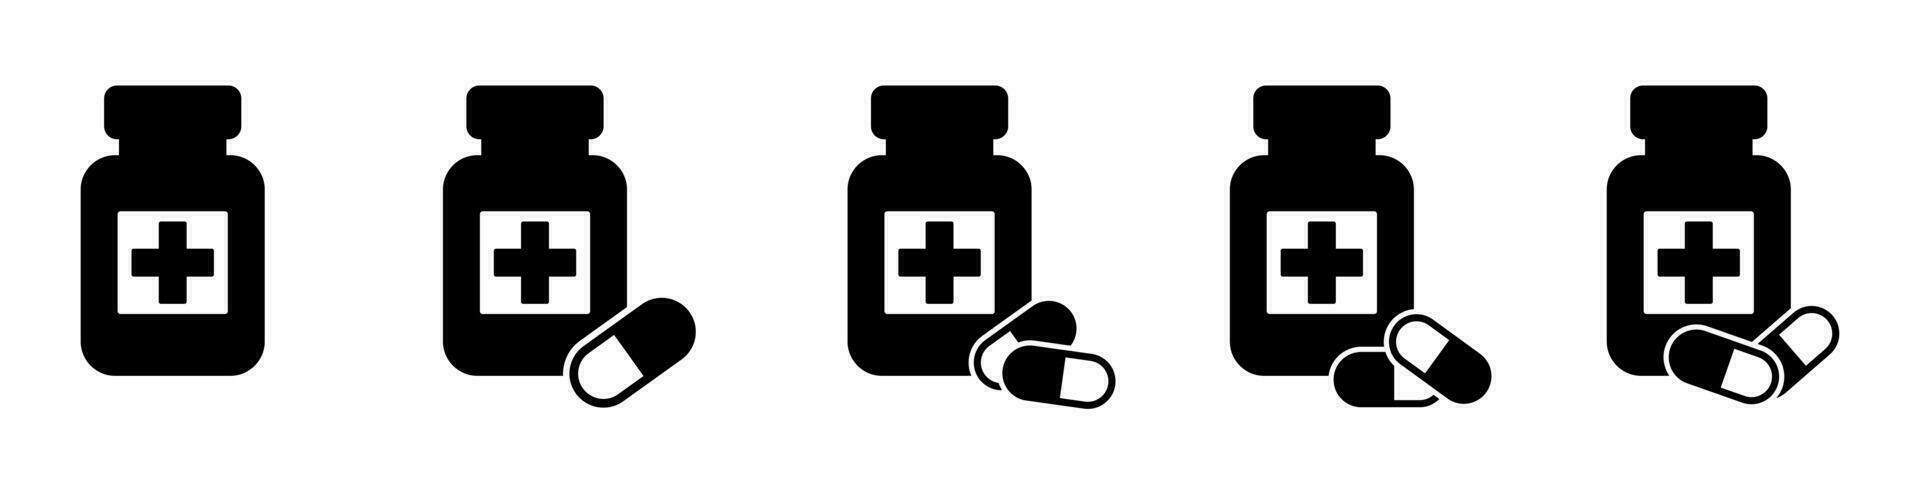 médicament bouteille et pilules icône. noir et blanc icône. vecteur illustration.